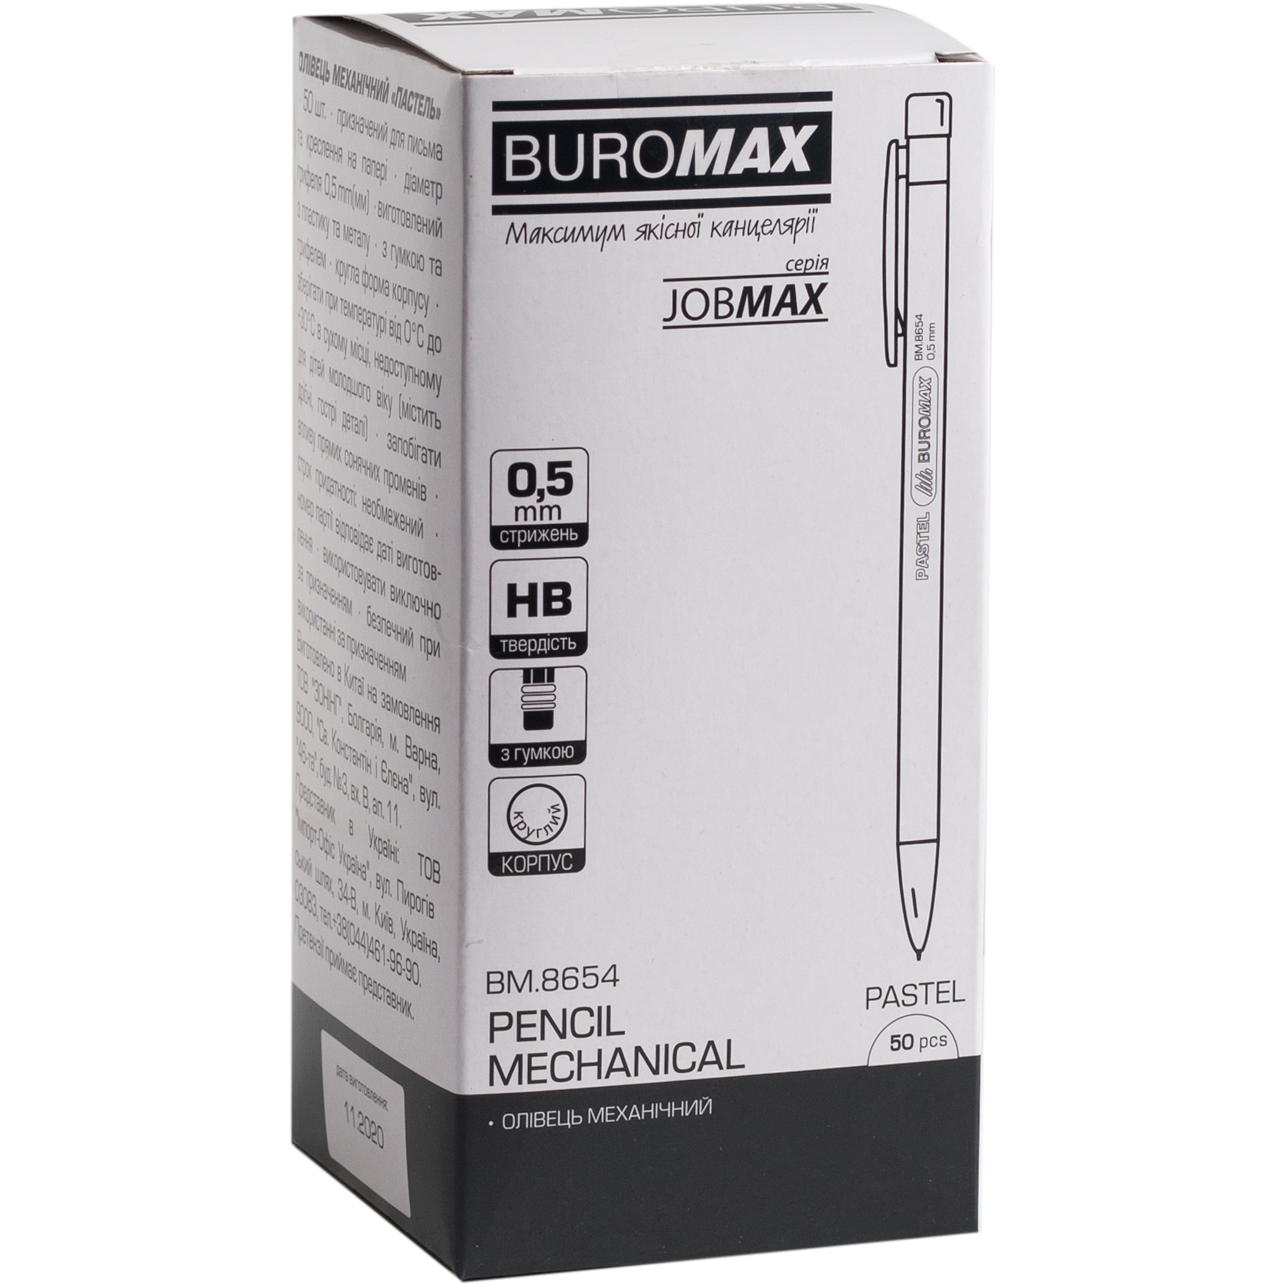 Карандаш механический Buromax Jobmax 0.5 мм ванильный (BM.8654-47) - фото 2